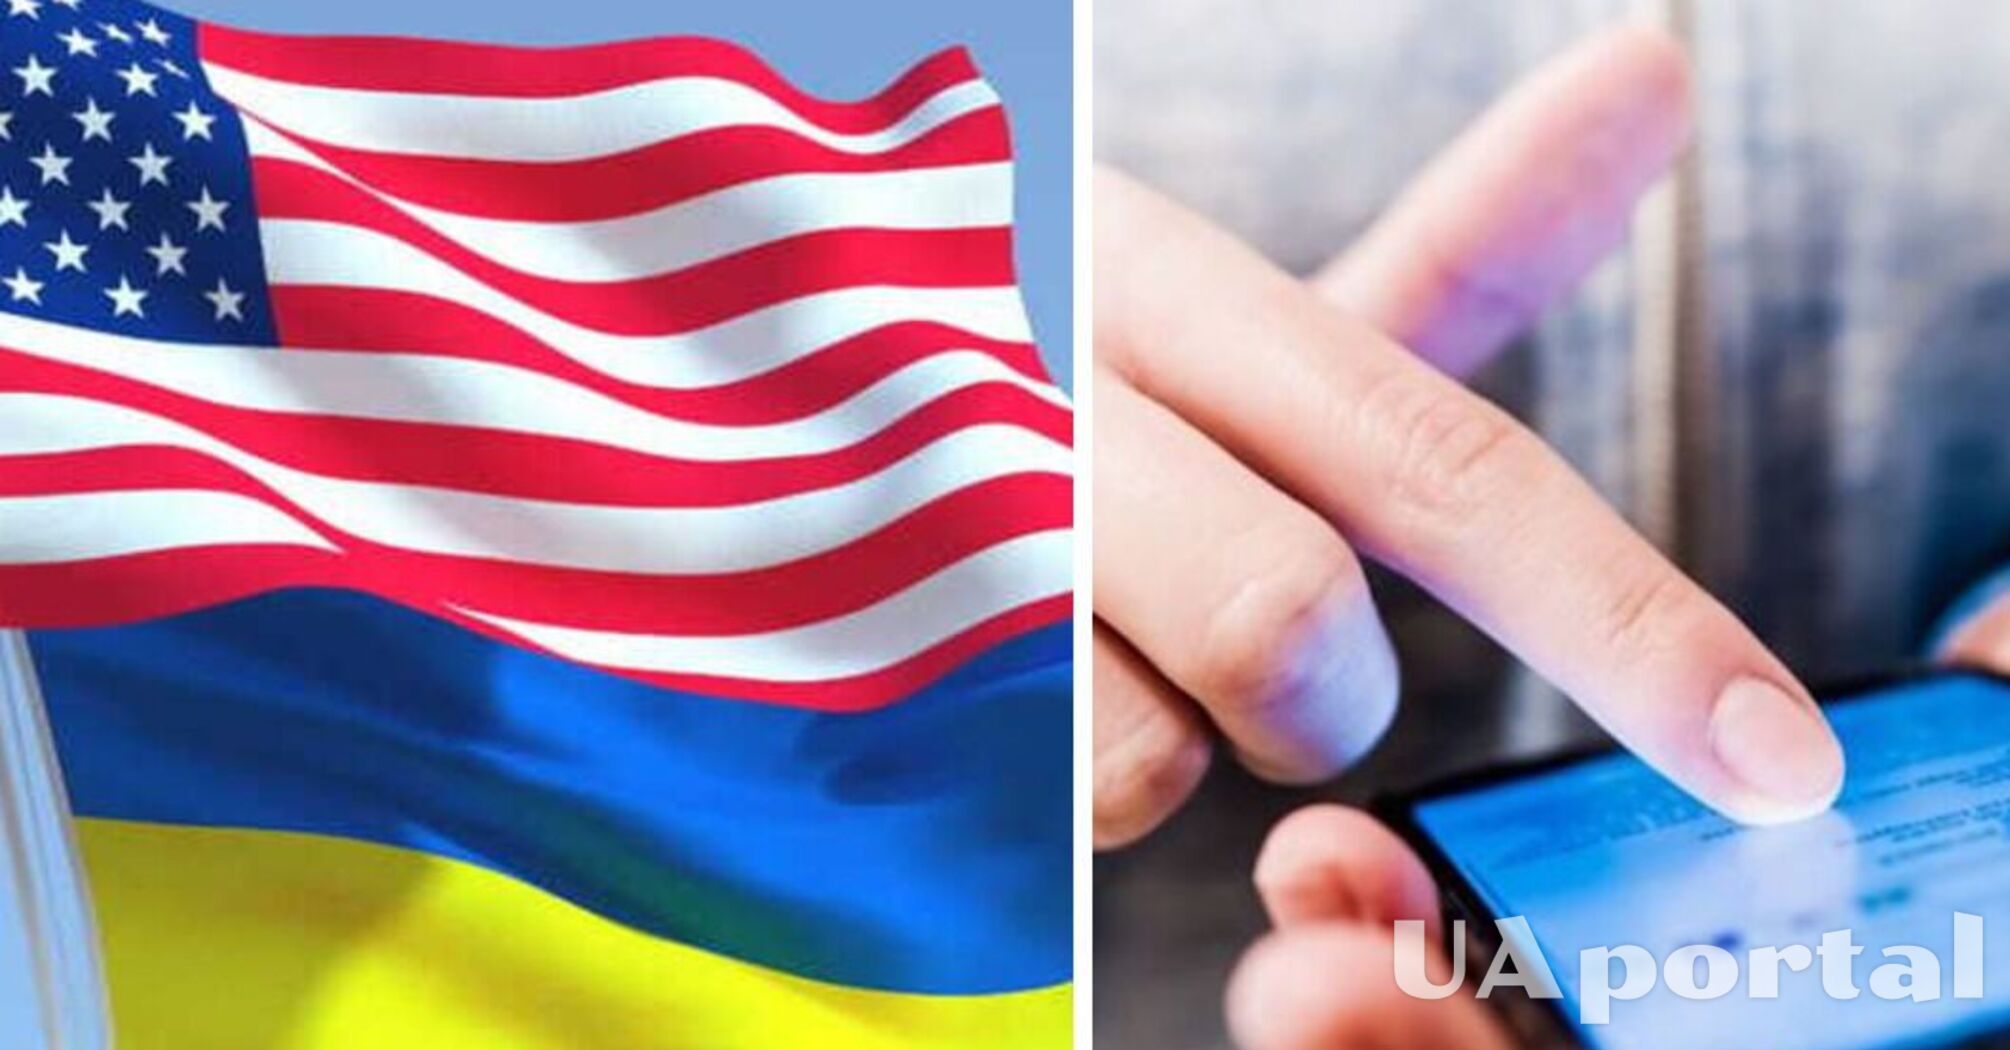 Stawka 100 miliardów dolarów: użytkownicy Twittera decydują w ankiecie, czy USA udzielą pomocy Ukrainie